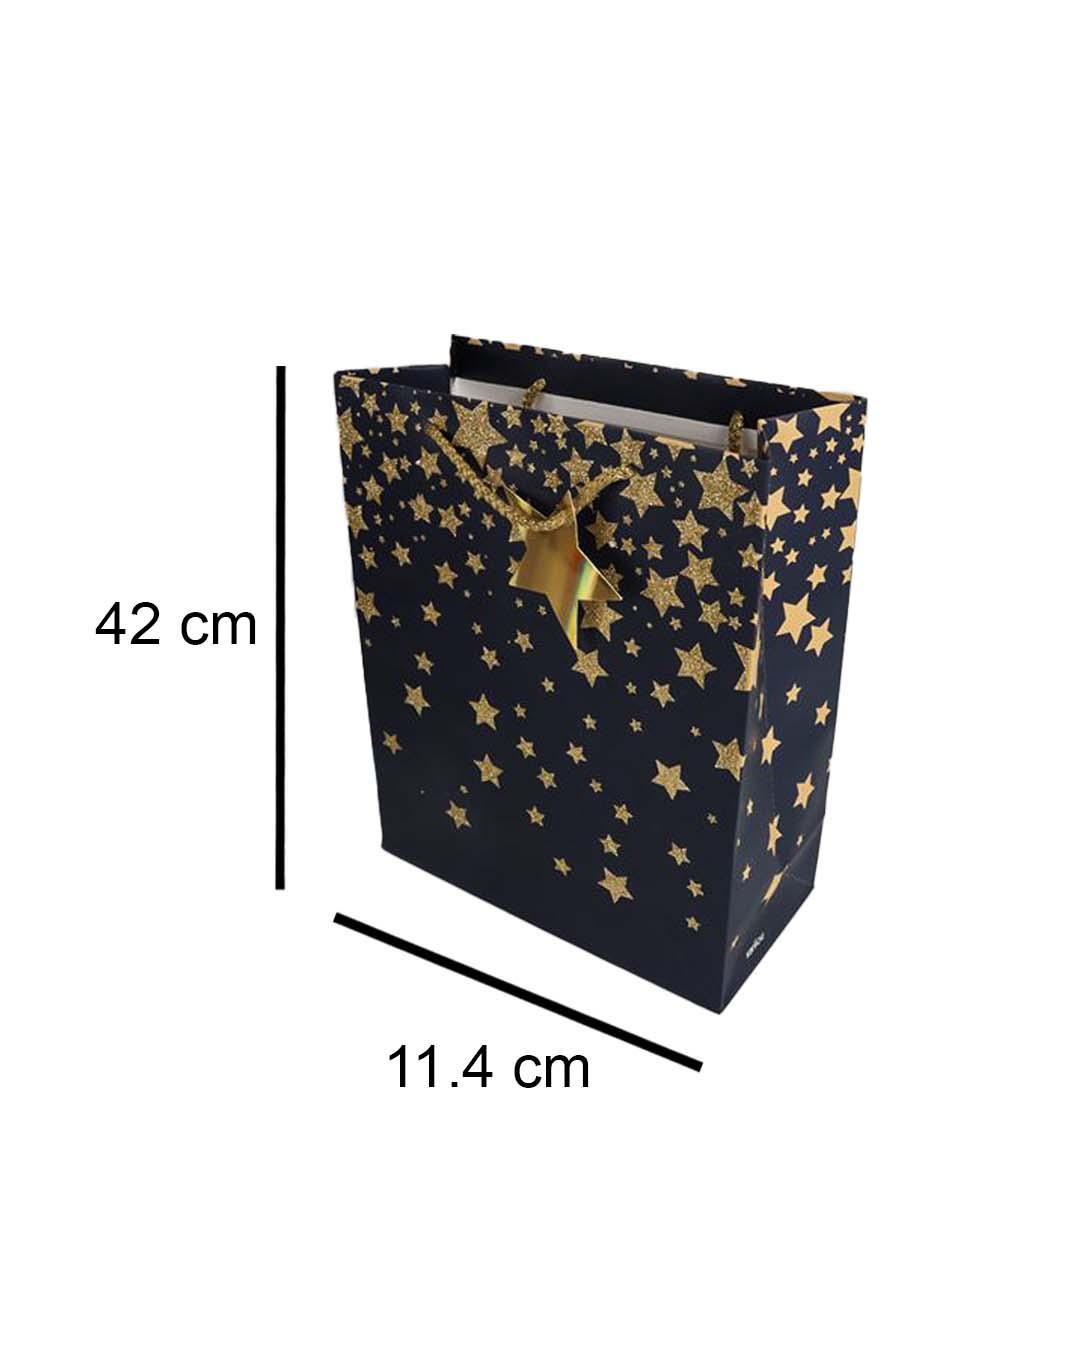 Starry Gift Bag, Large, Navy Blue, Paper, Set of 3 - MARKET 99